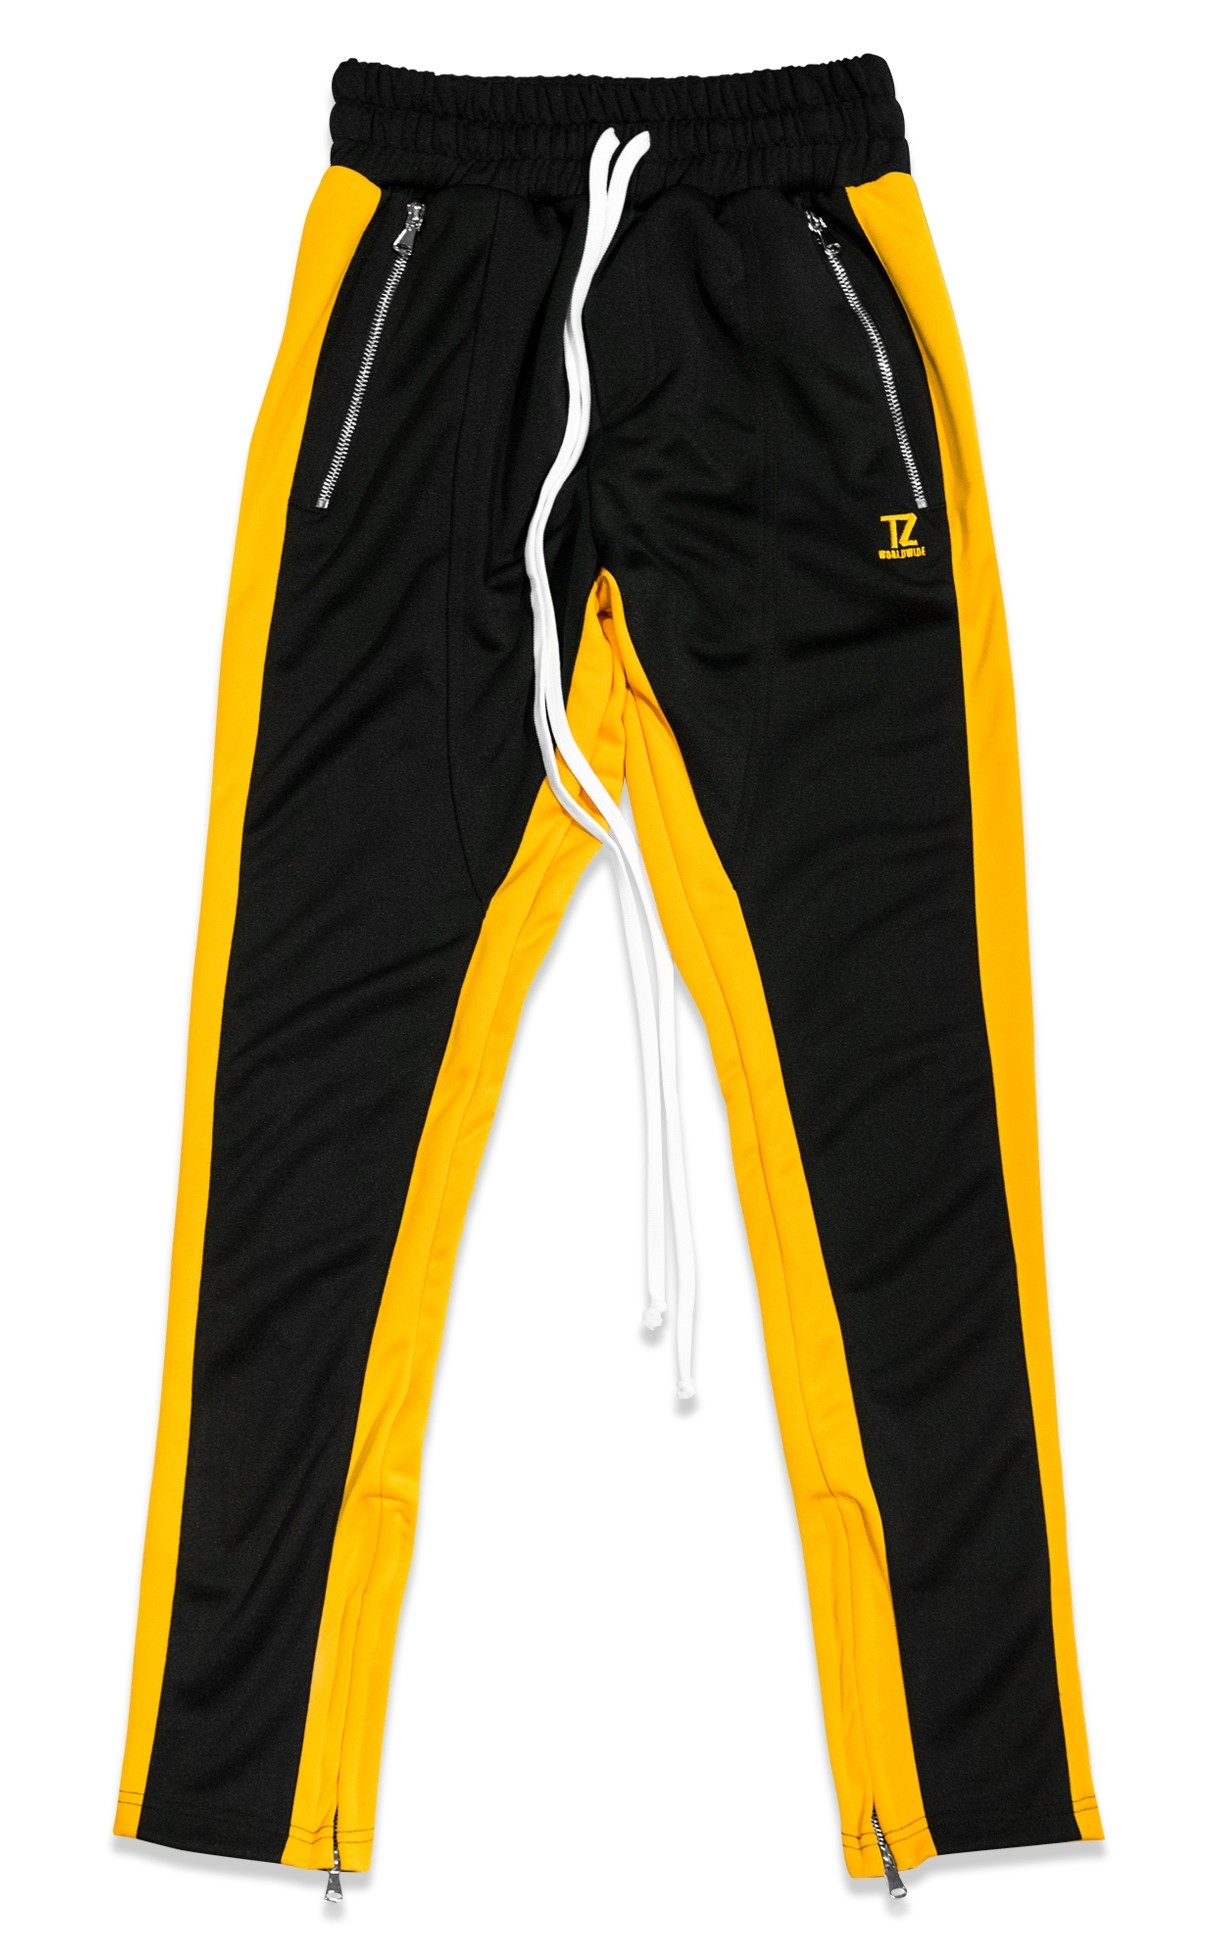 yellow pants black stripe